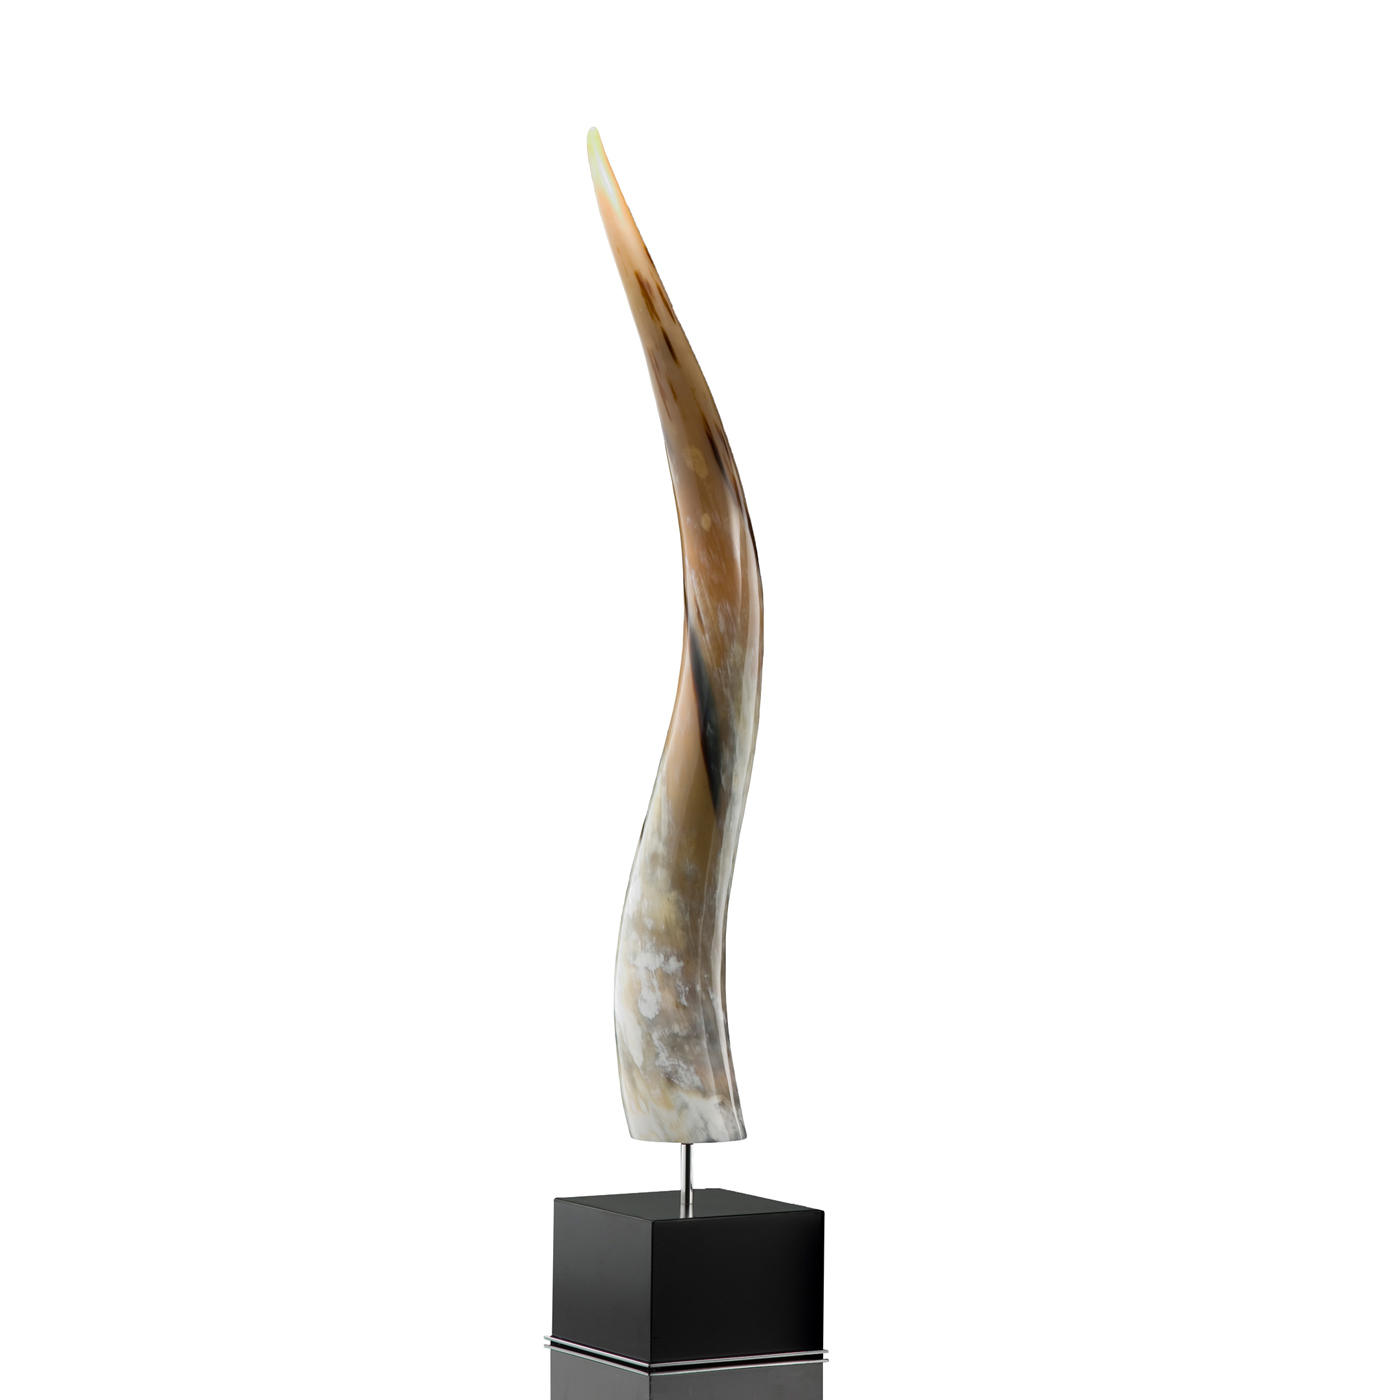 Sculture - Leuca scultura in corno e legno laccato nero - Arcahorn